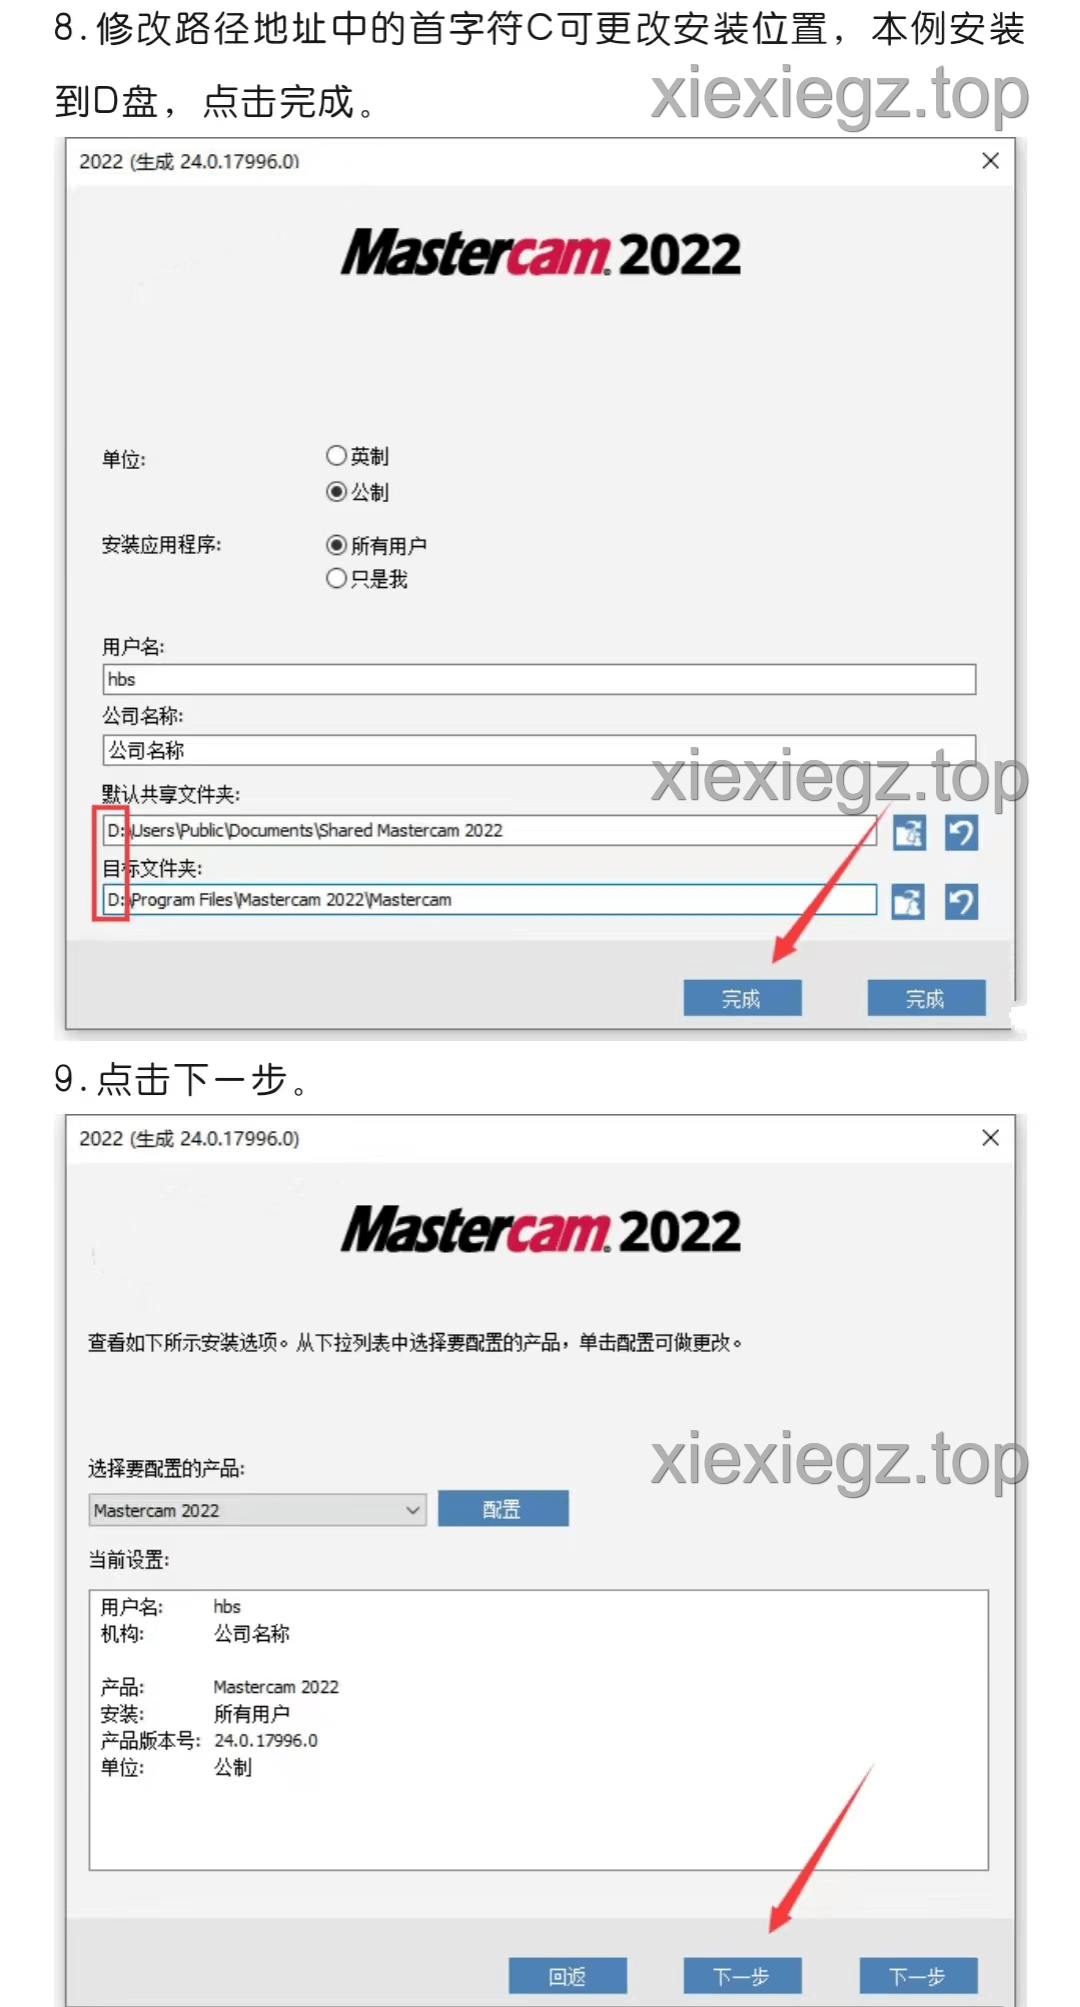 【适用型CAD/CAM设想辅助软件】Mastercam 2022最新版详细安拆步调